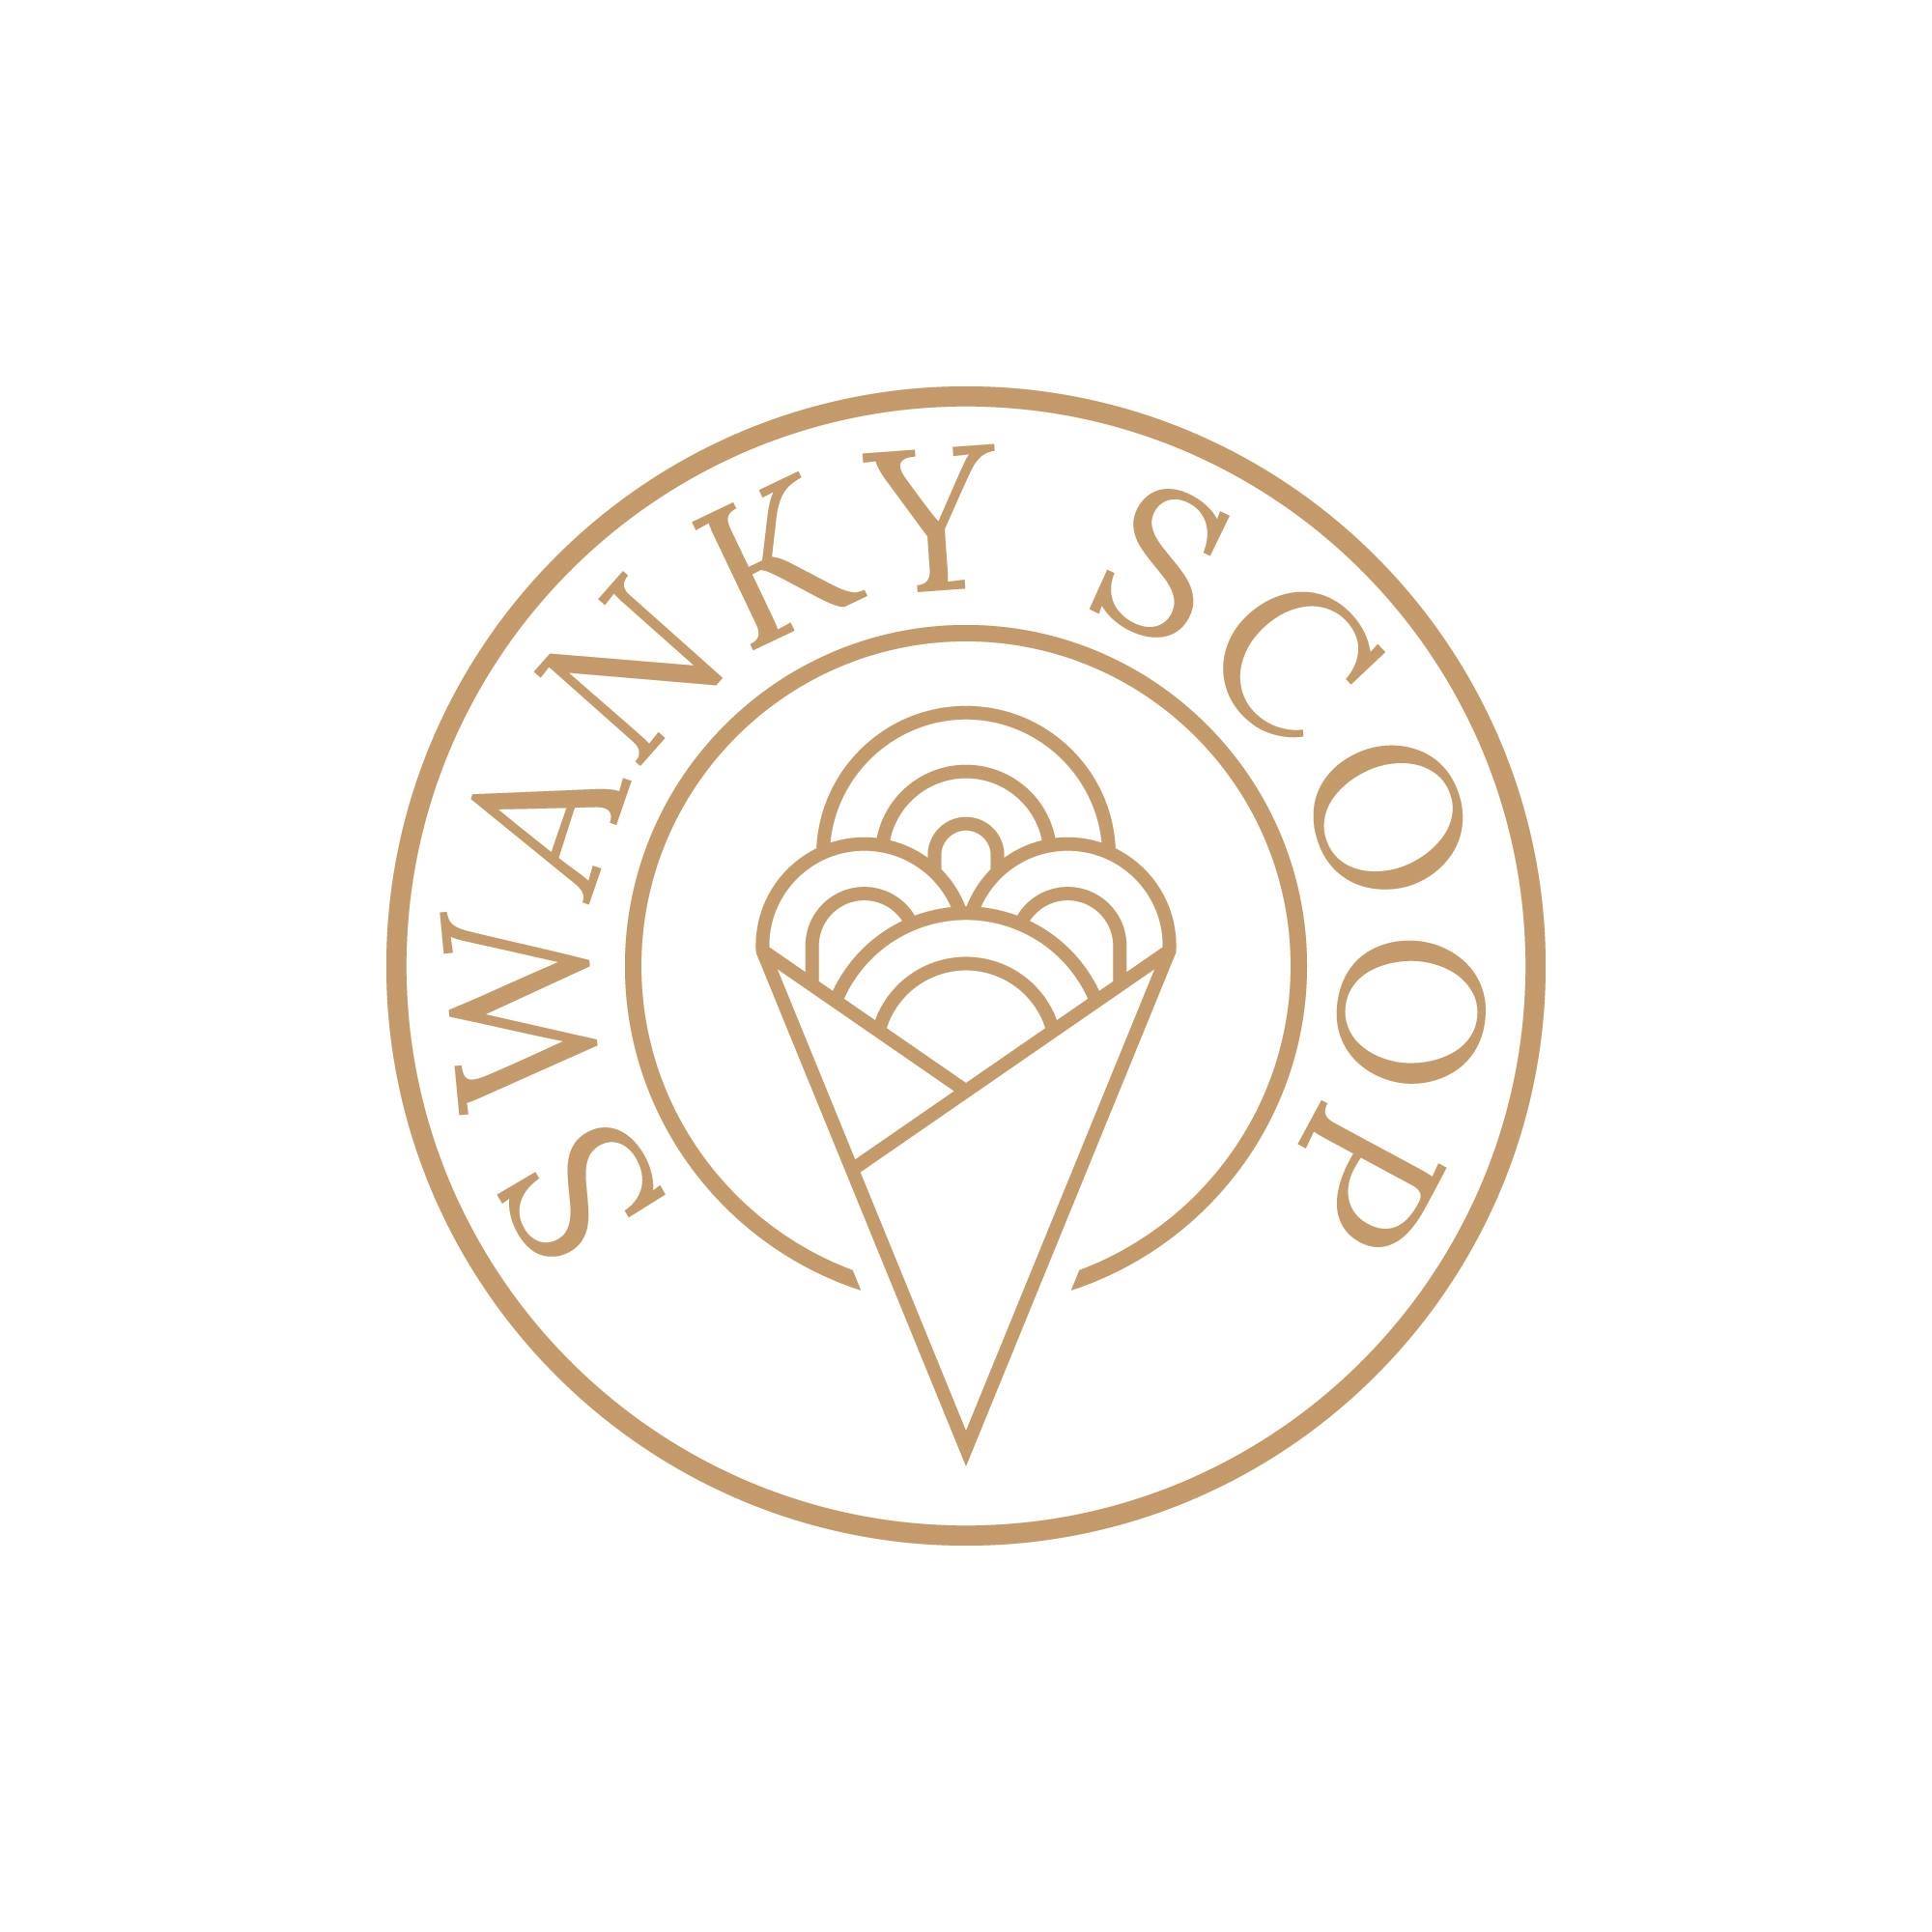 Swanky Scoop's logo